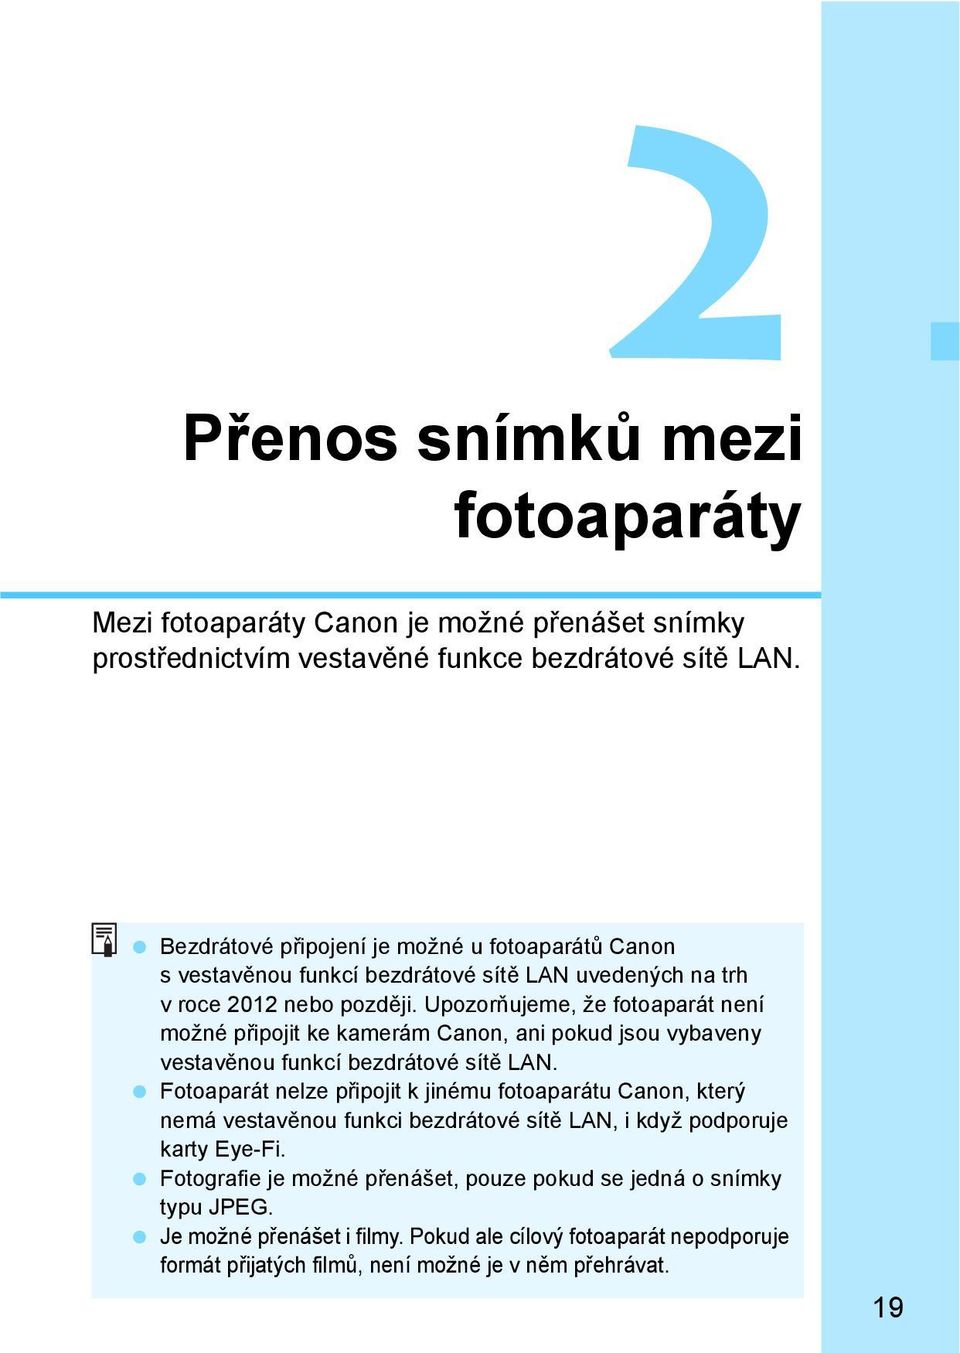 Upozor ujeme, že fotoaparát není možné p ipojit ke kamerám Canon, ani pokud jsou vybaveny vestav nou funkcí bezdrátové sít LAN.